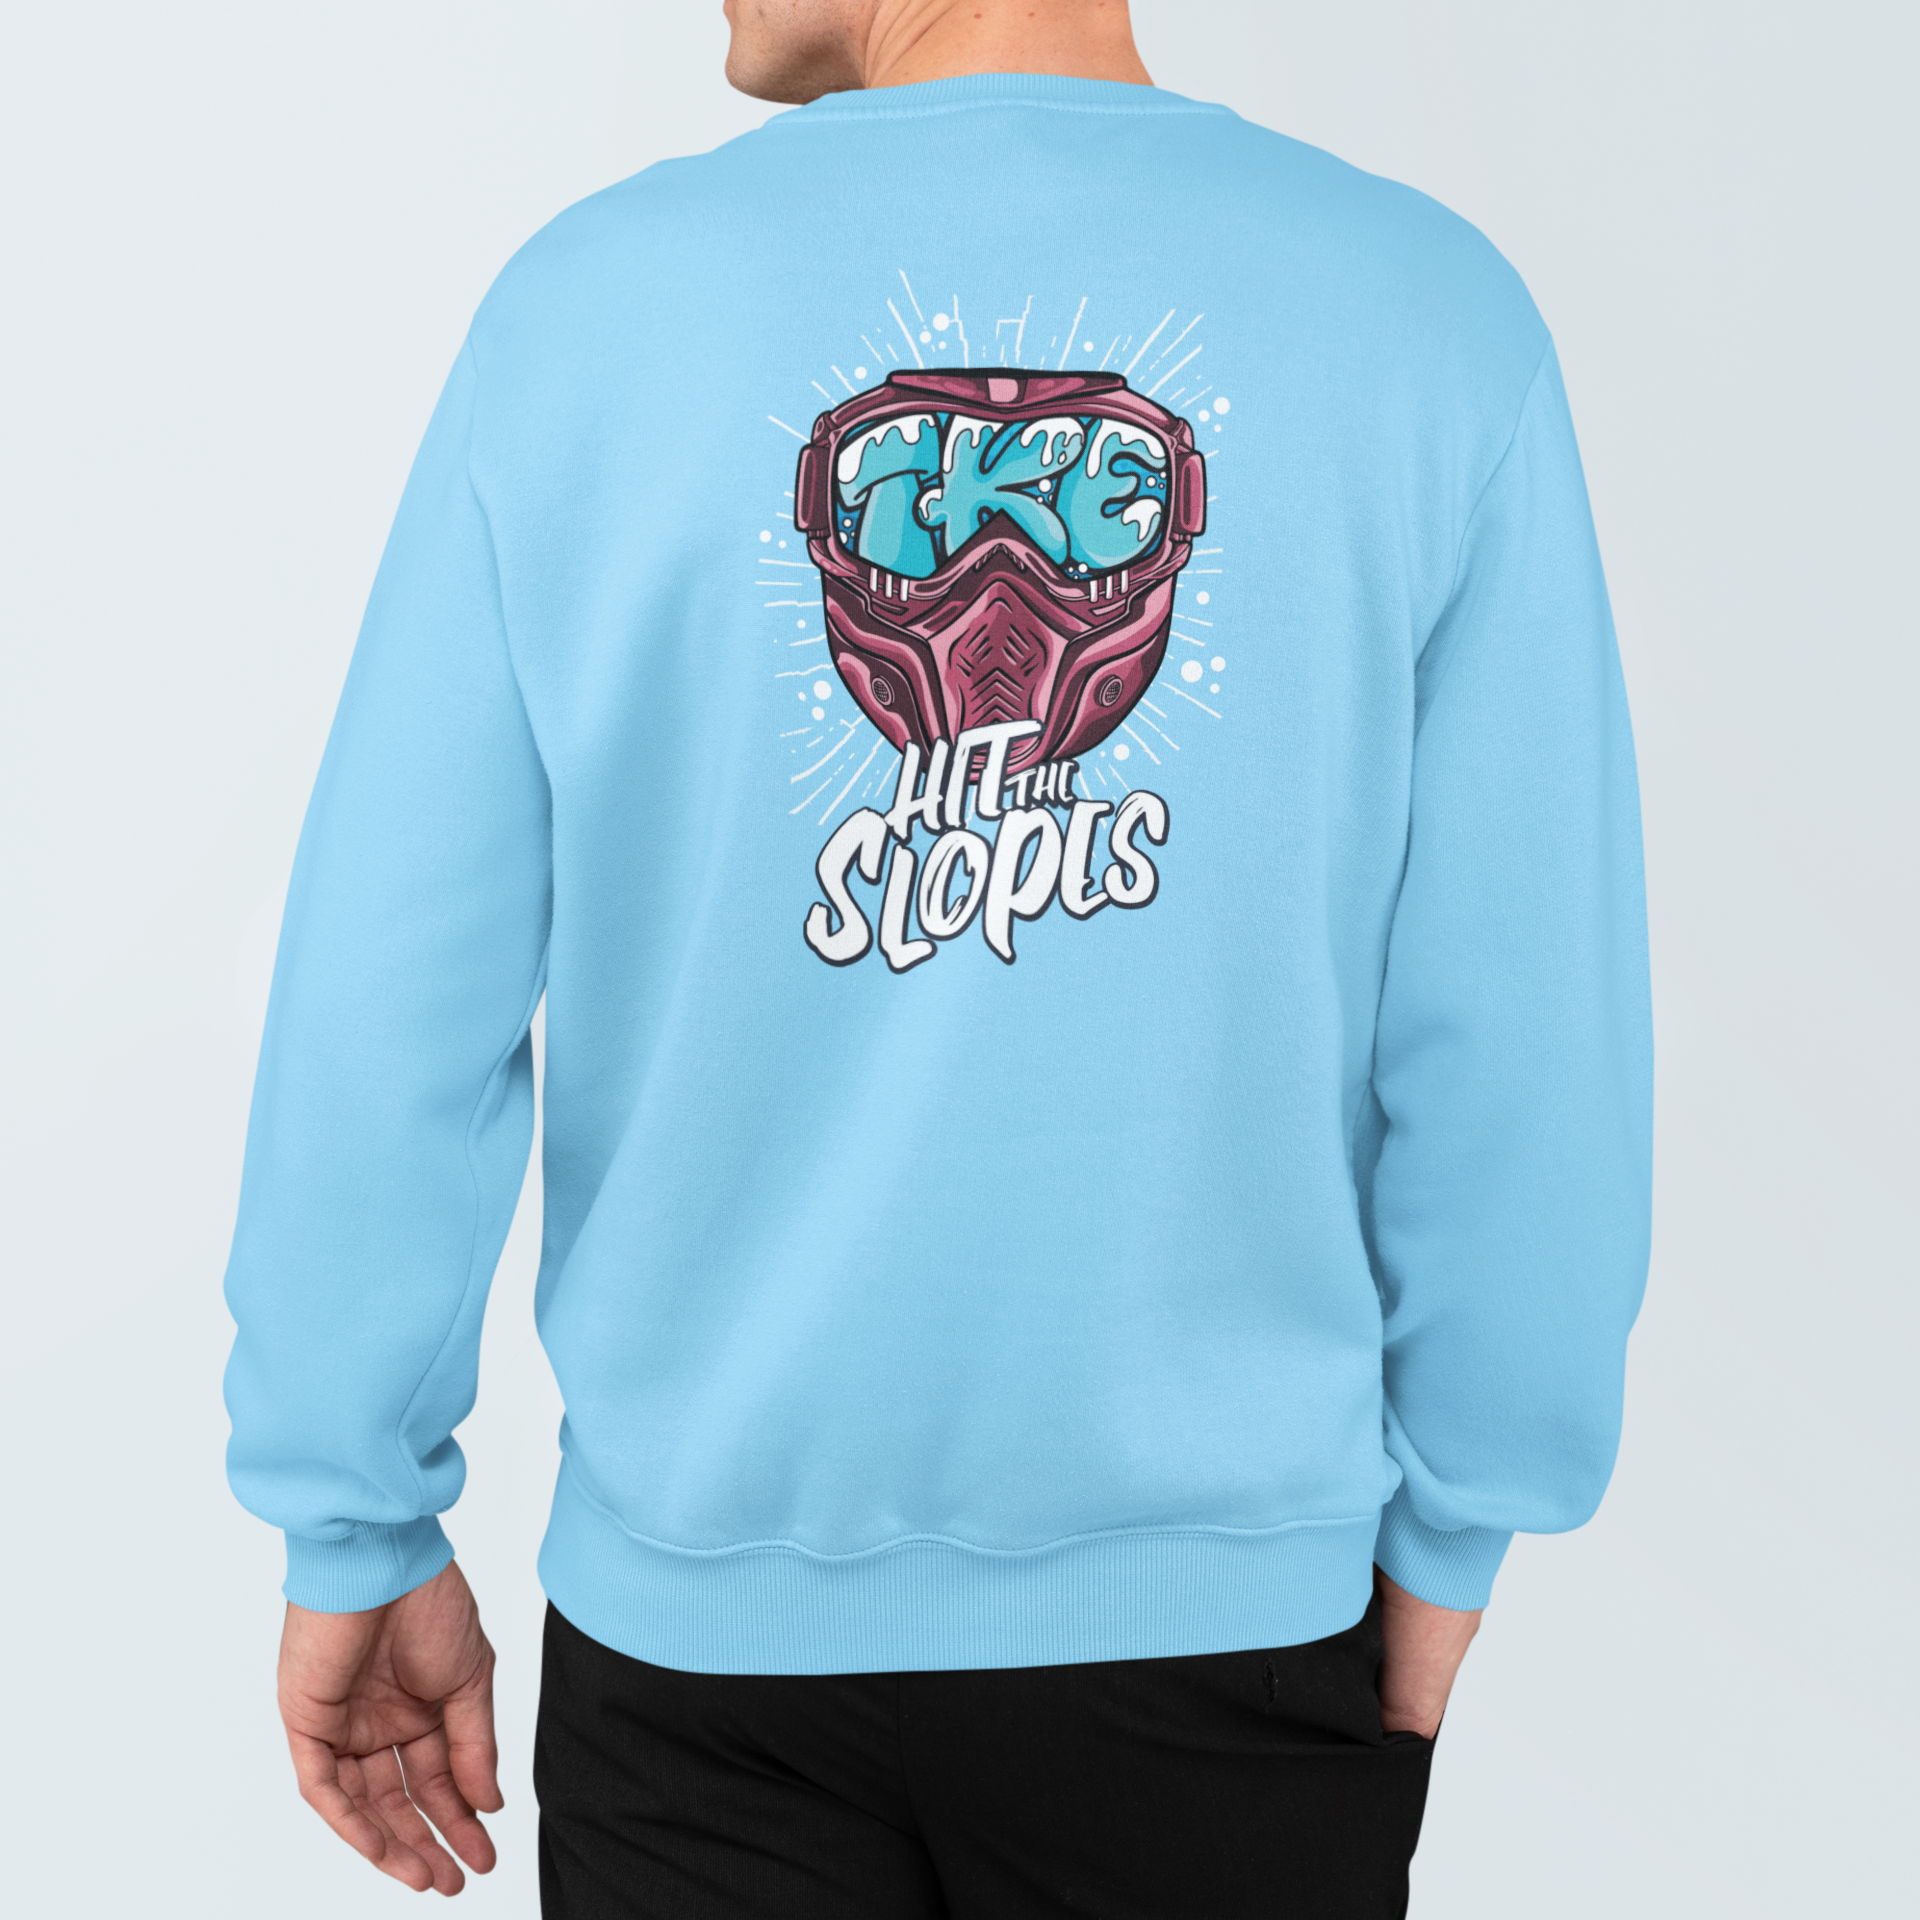 Tau Kappa Epsilon Graphic Crewneck Sweatshirt | Hit the Slopes | TKE Clothing and Merchandise 